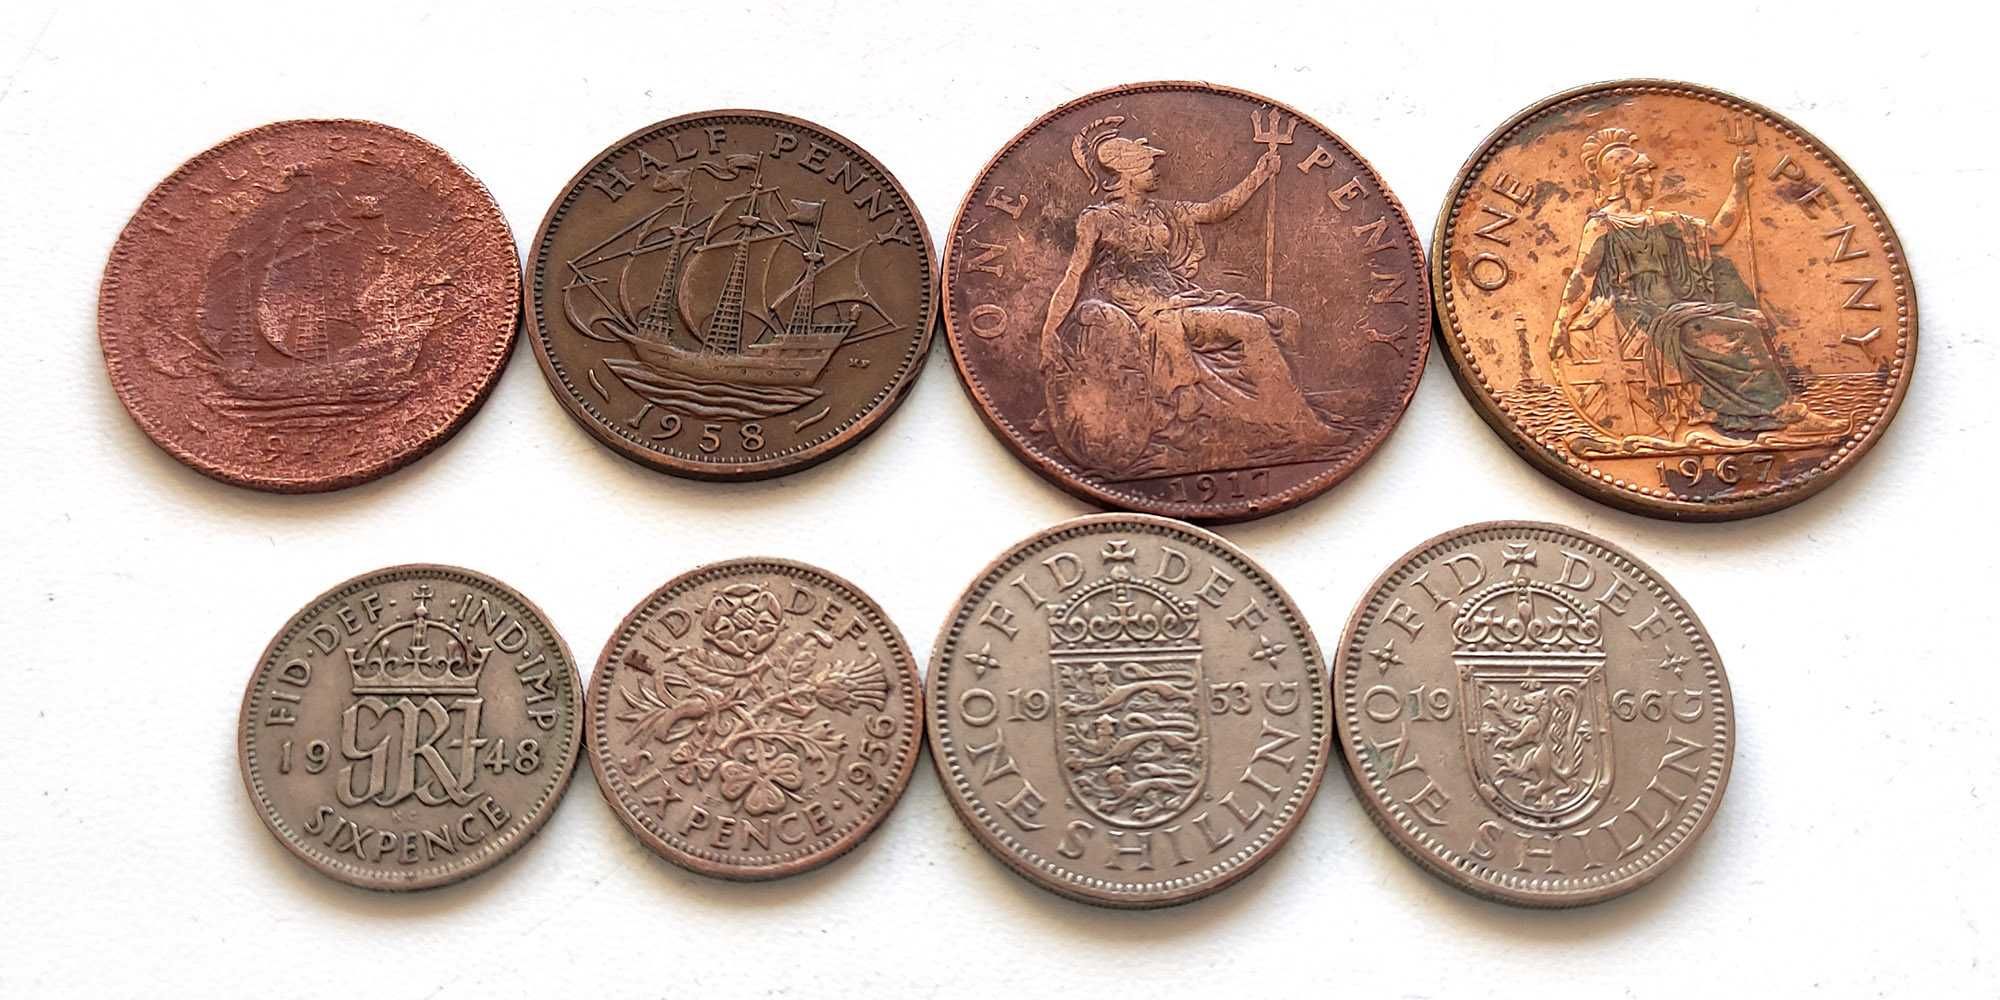 Монеты Великобритании предесятичные (пенсы, шиллинги), 8 шт